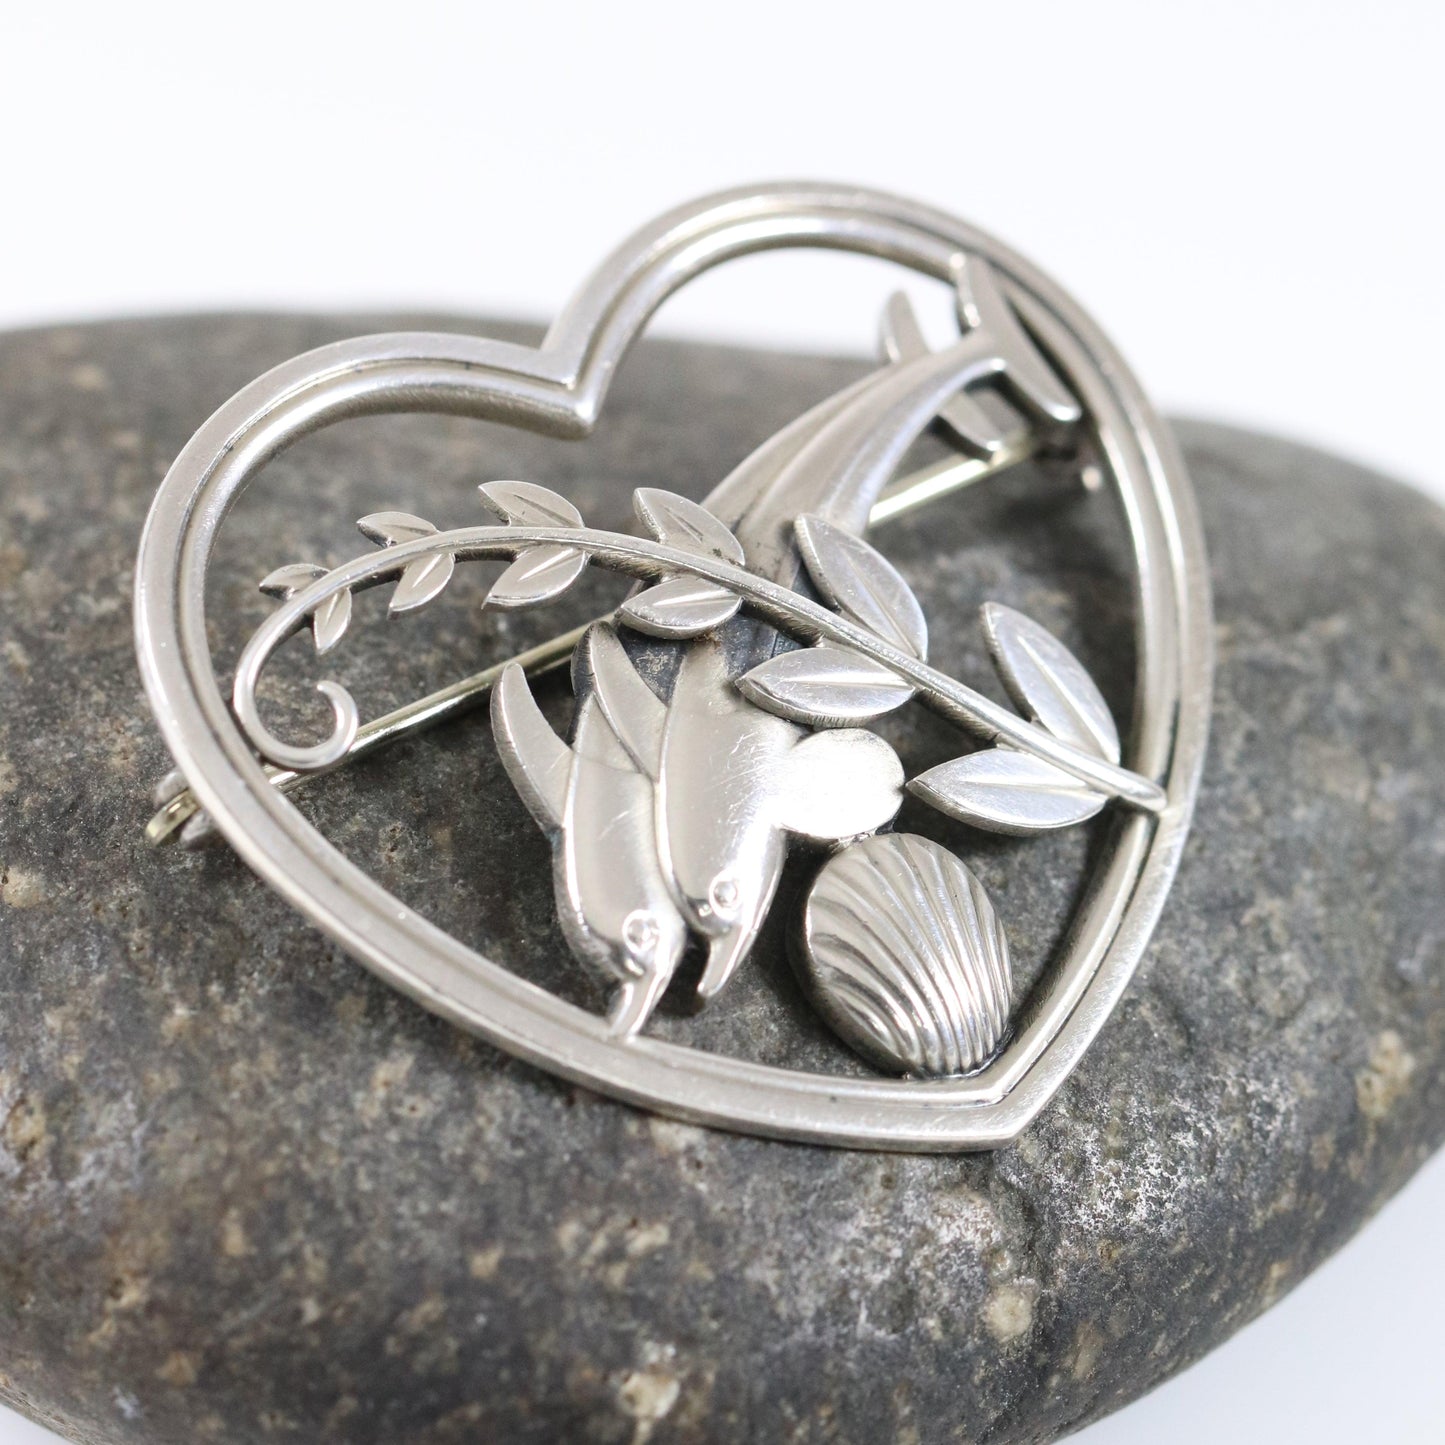 Vintage Georg Jensen Jewelry | Heart and Dolphin Brooch 312 - Carmel Fine Silver Jewelry